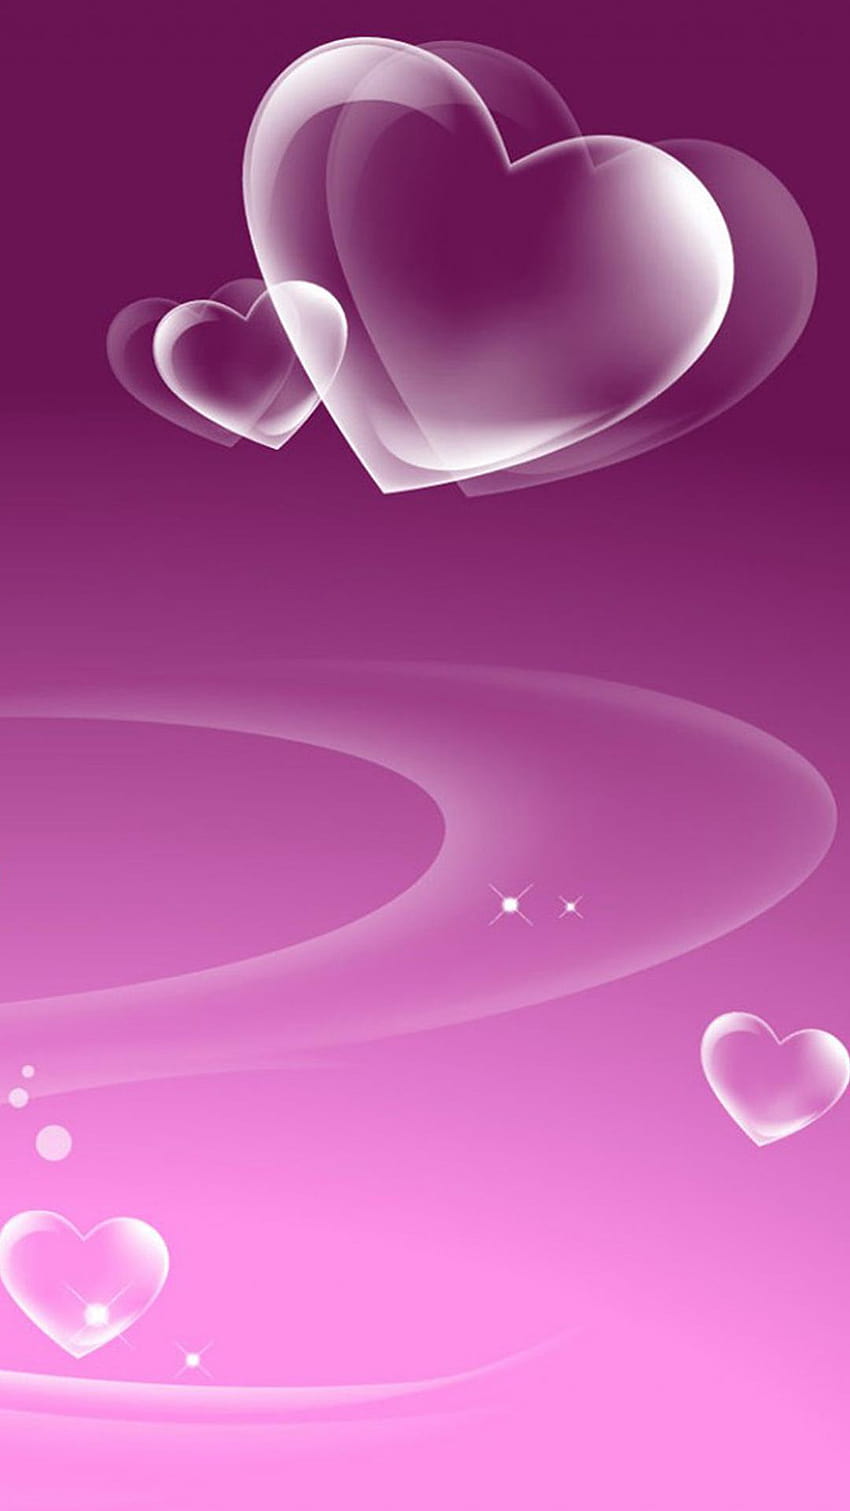 Romantic Love, romantic full screen HD phone wallpaper | Pxfuel